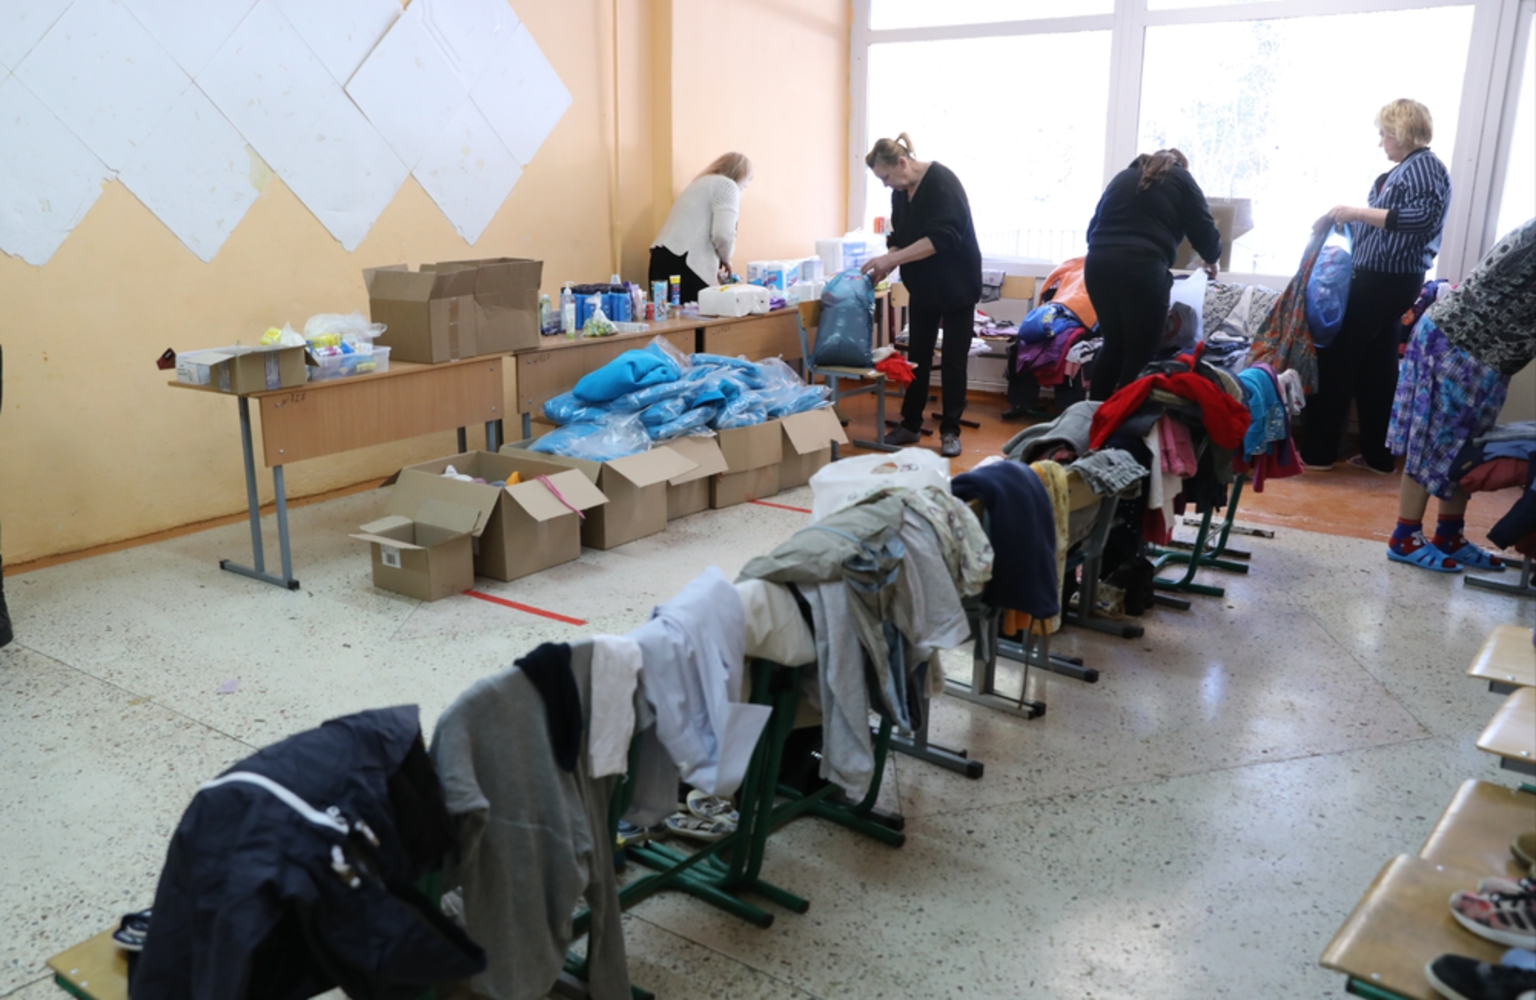 «Недостаточное питание»: в Ярославле проверят жалобу на условия проживания беженцев 